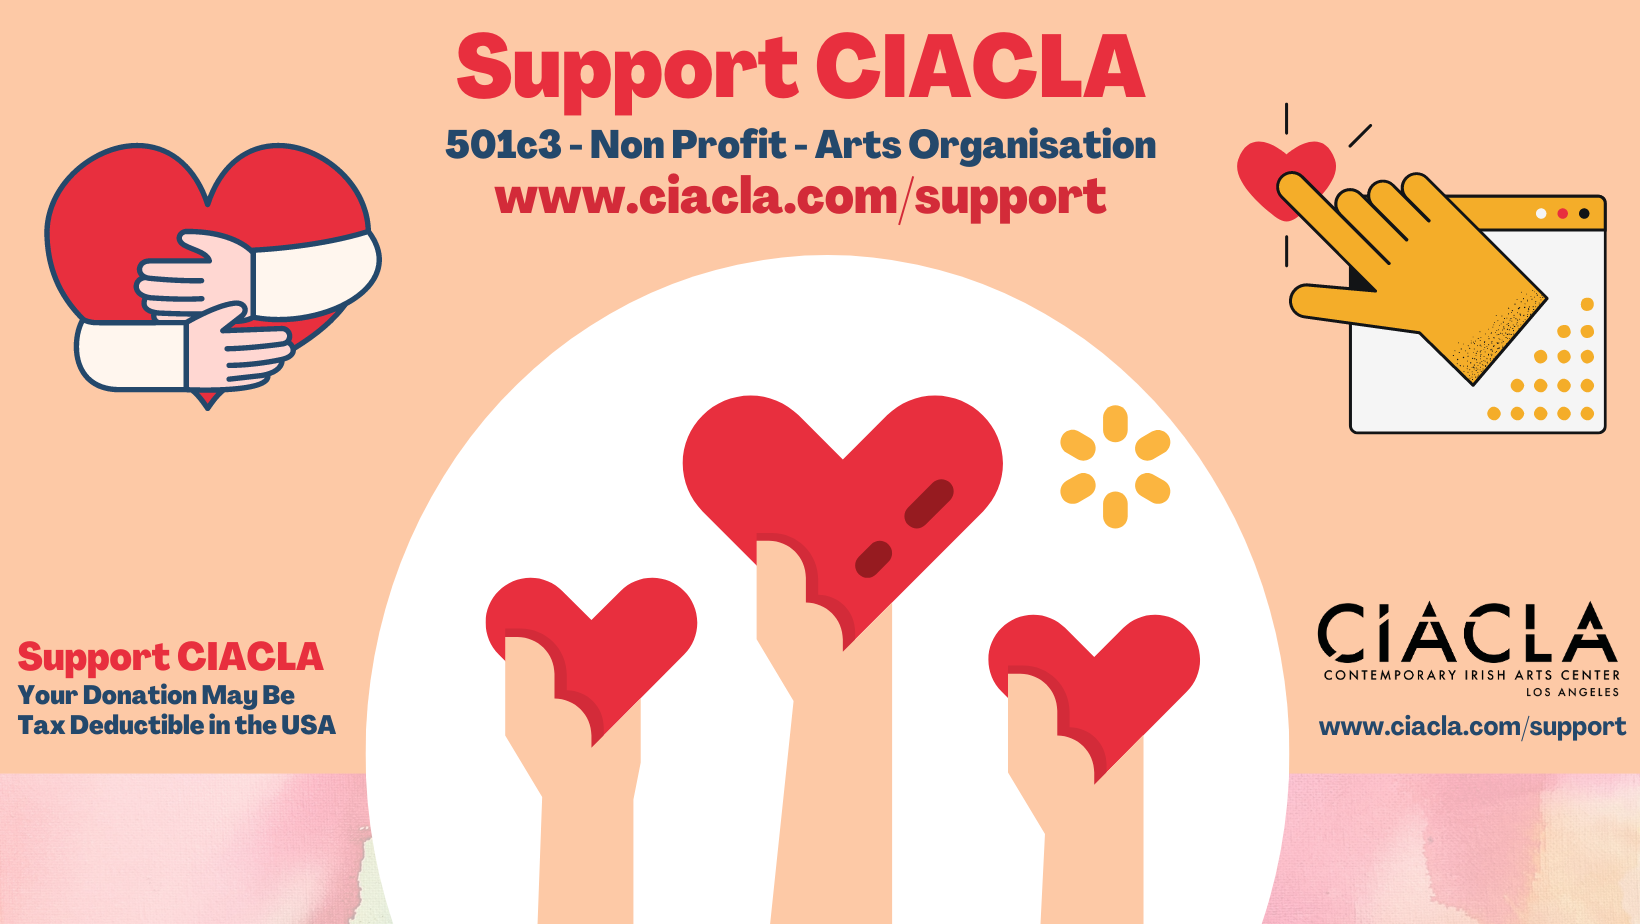 CIACLA Donation Requests